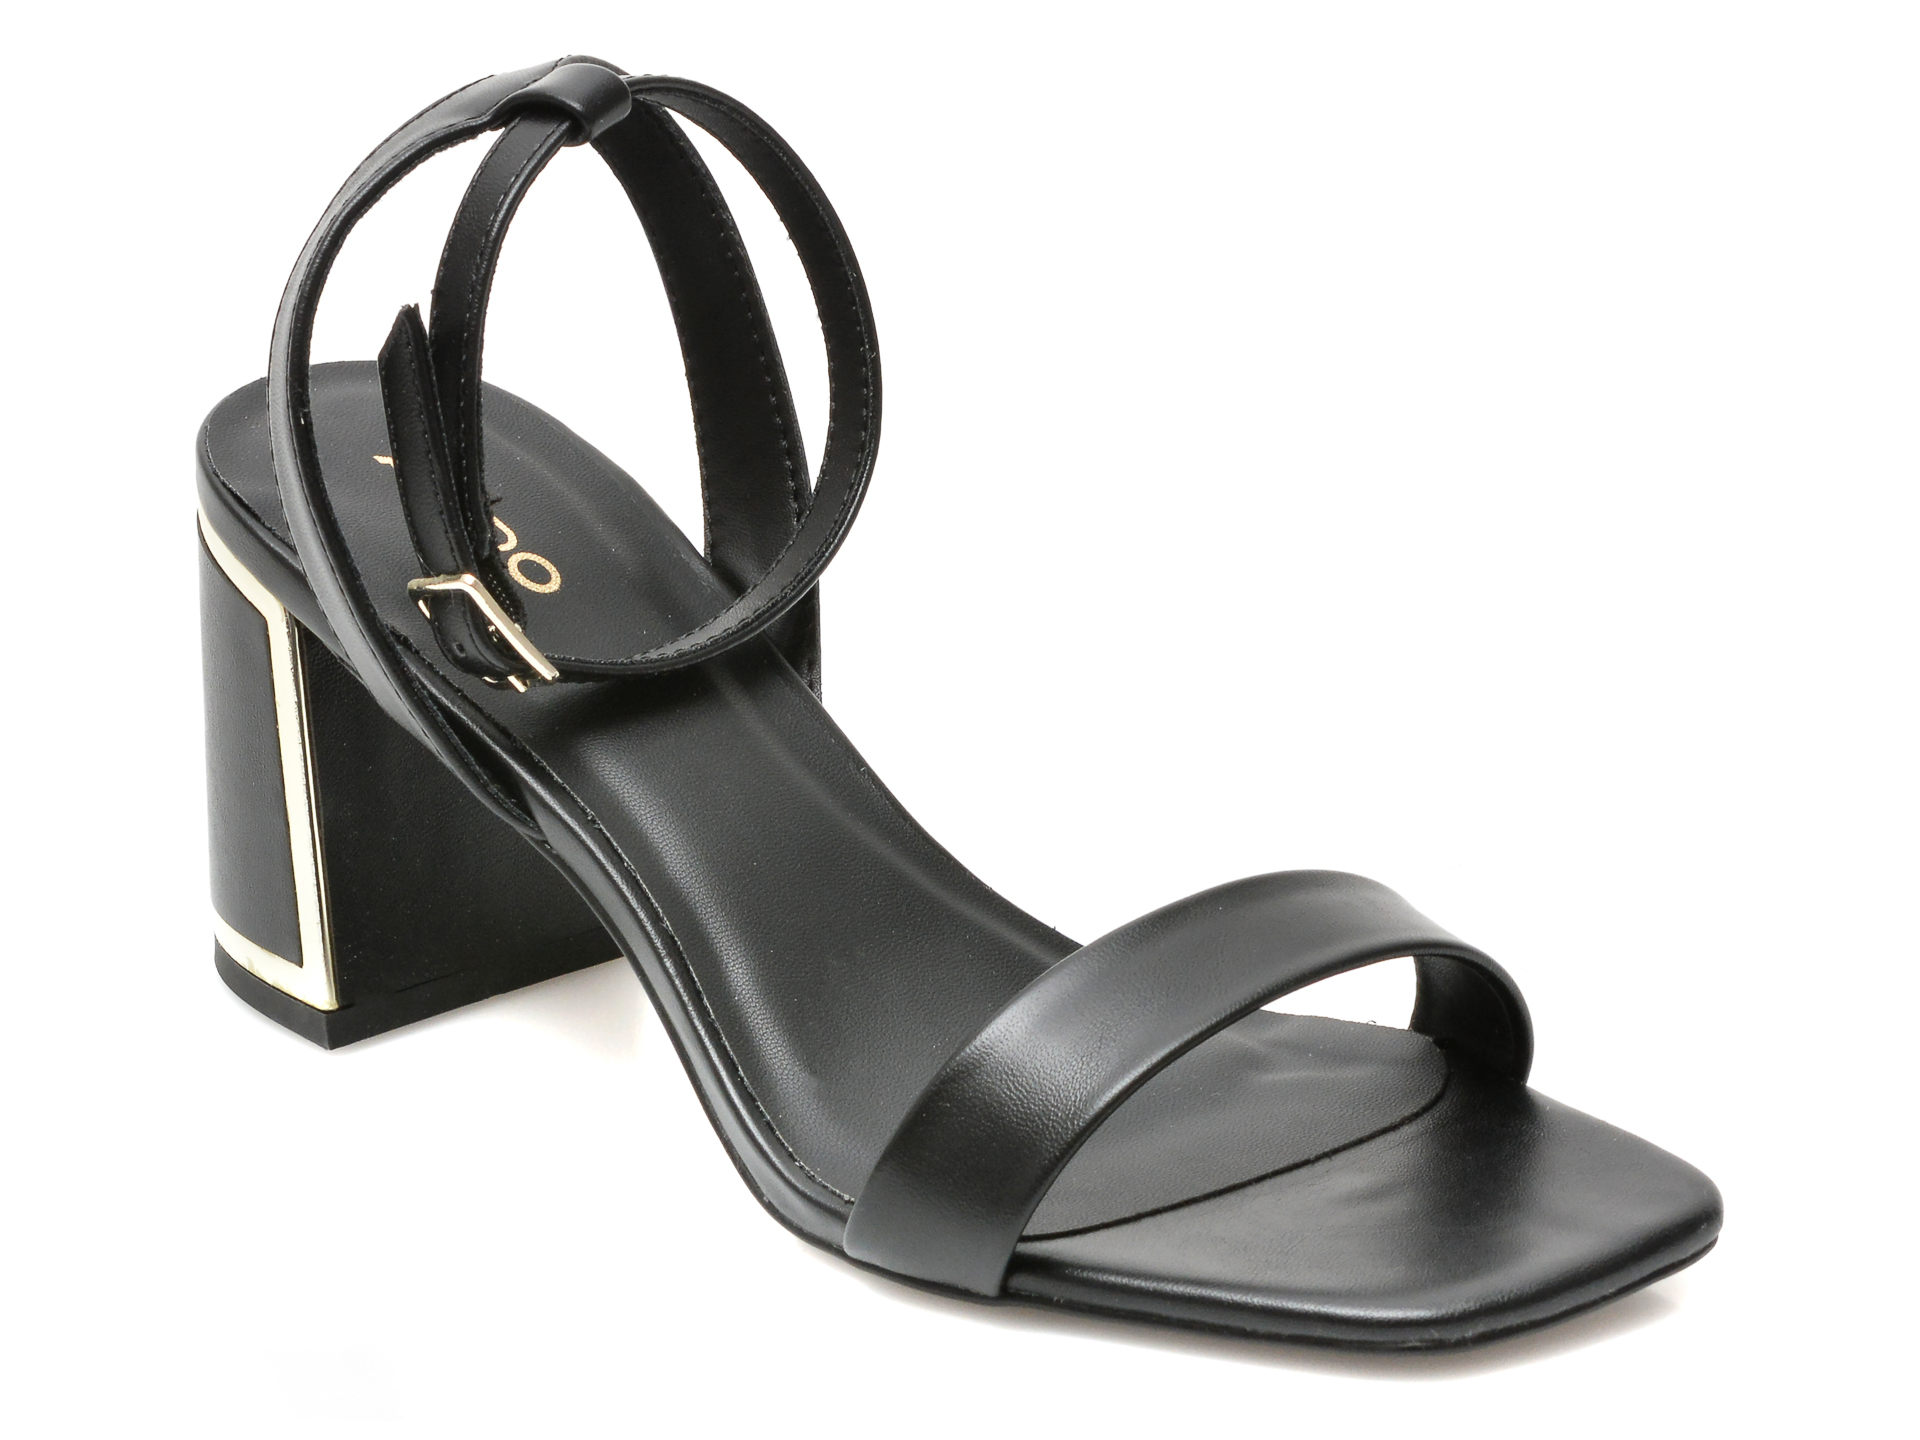 Sandale ALDO negre, LOTHERRAM001, din piele ecologica Aldo